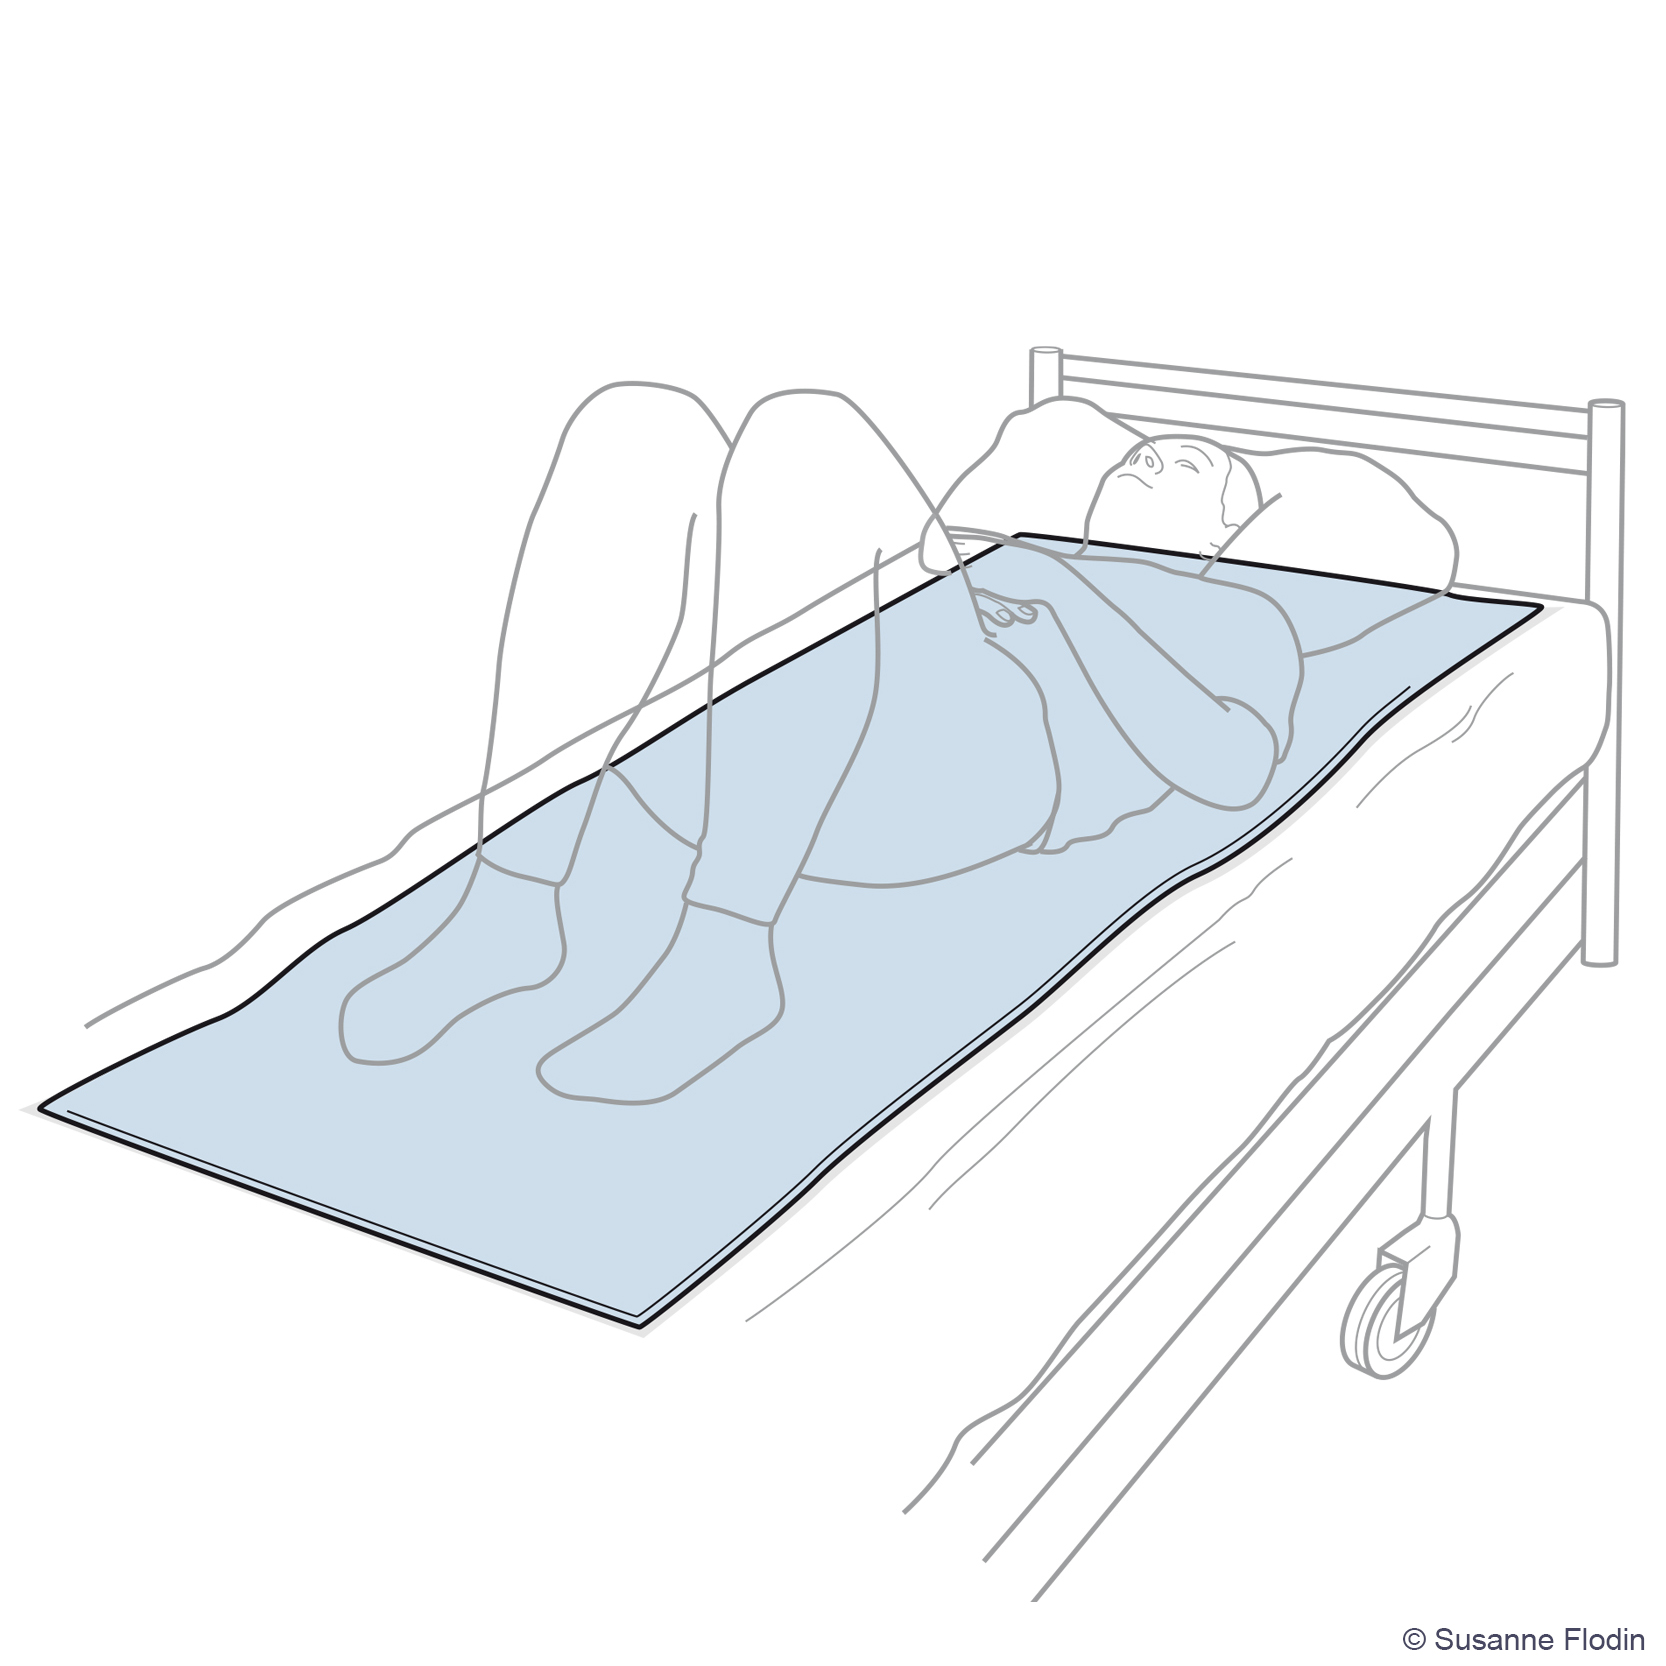 Bild som beskriver hur ett draglakan placeras under patienten i sängen. 